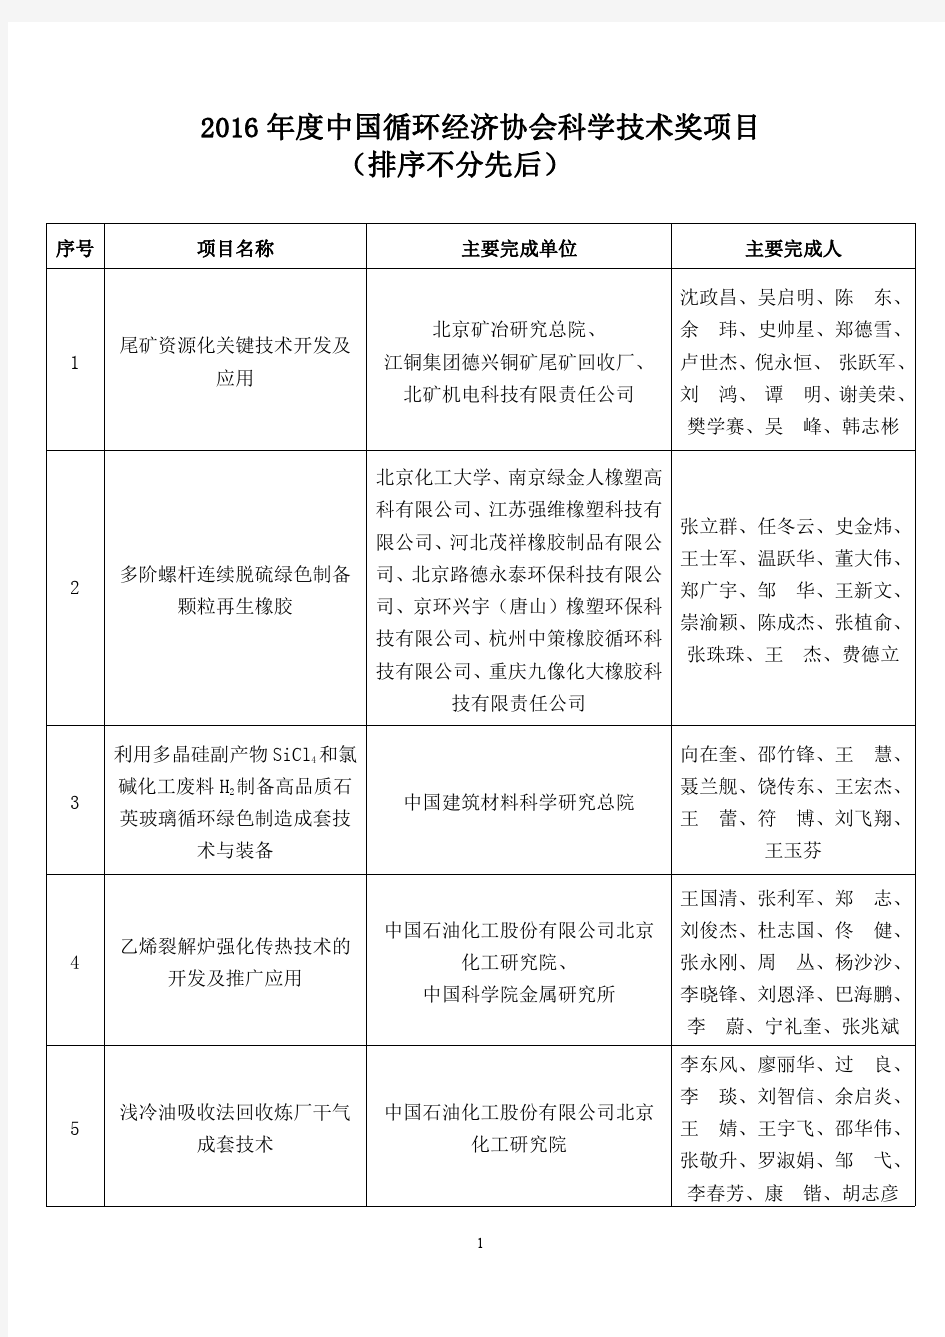 2016中国循环经济协会科学技术奖项目排序不分先后